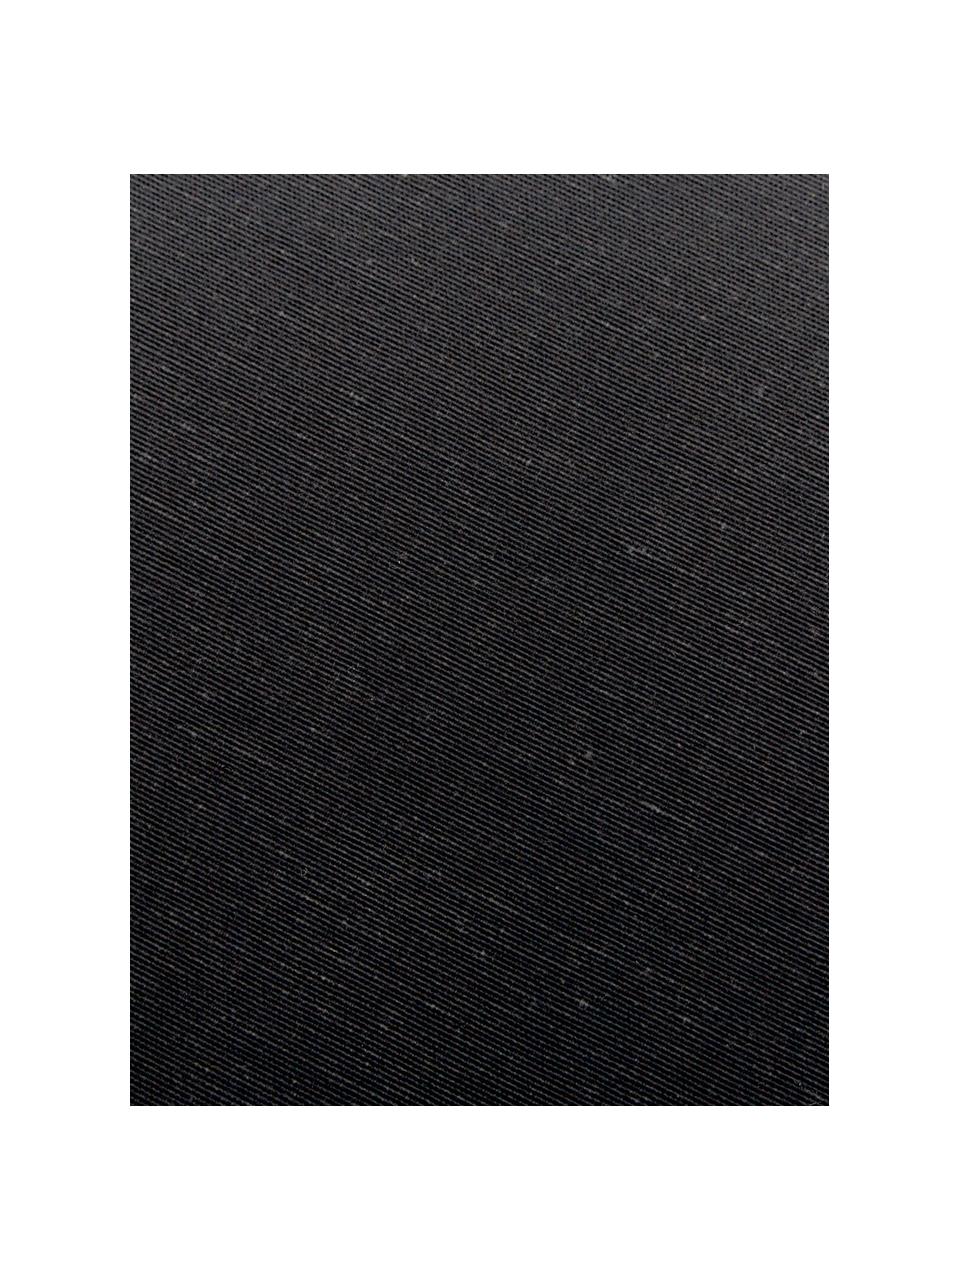 Poduszka na ławkę Panama, 50% bawełna, 45% poliester,
5% inne włókna, Czarny, S 48 x D 120 cm